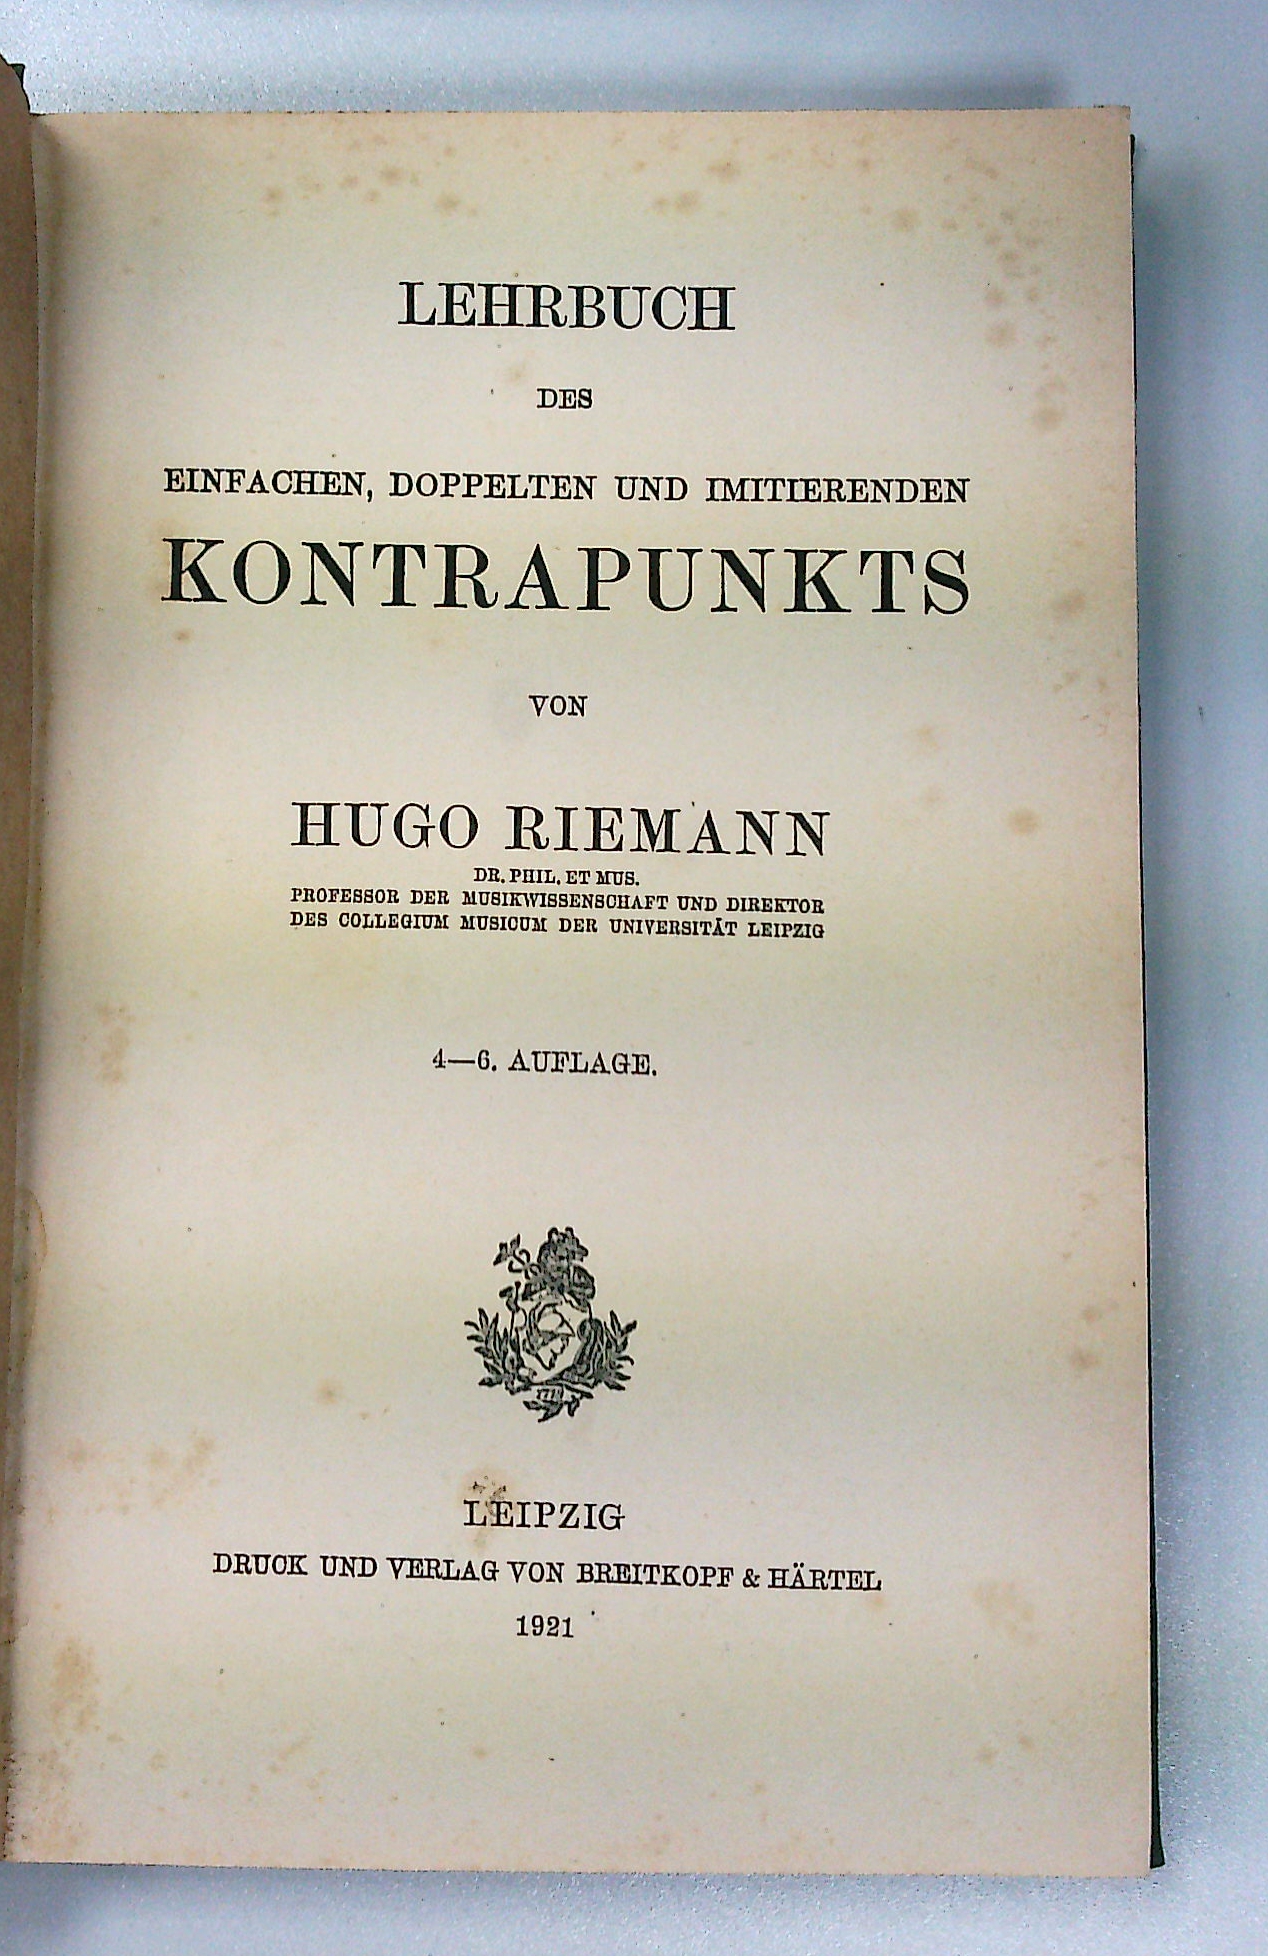 Lehrbuch des Einfachen, Doppelten und imitierenden Kontrapunkts. - Riemann, Hugo